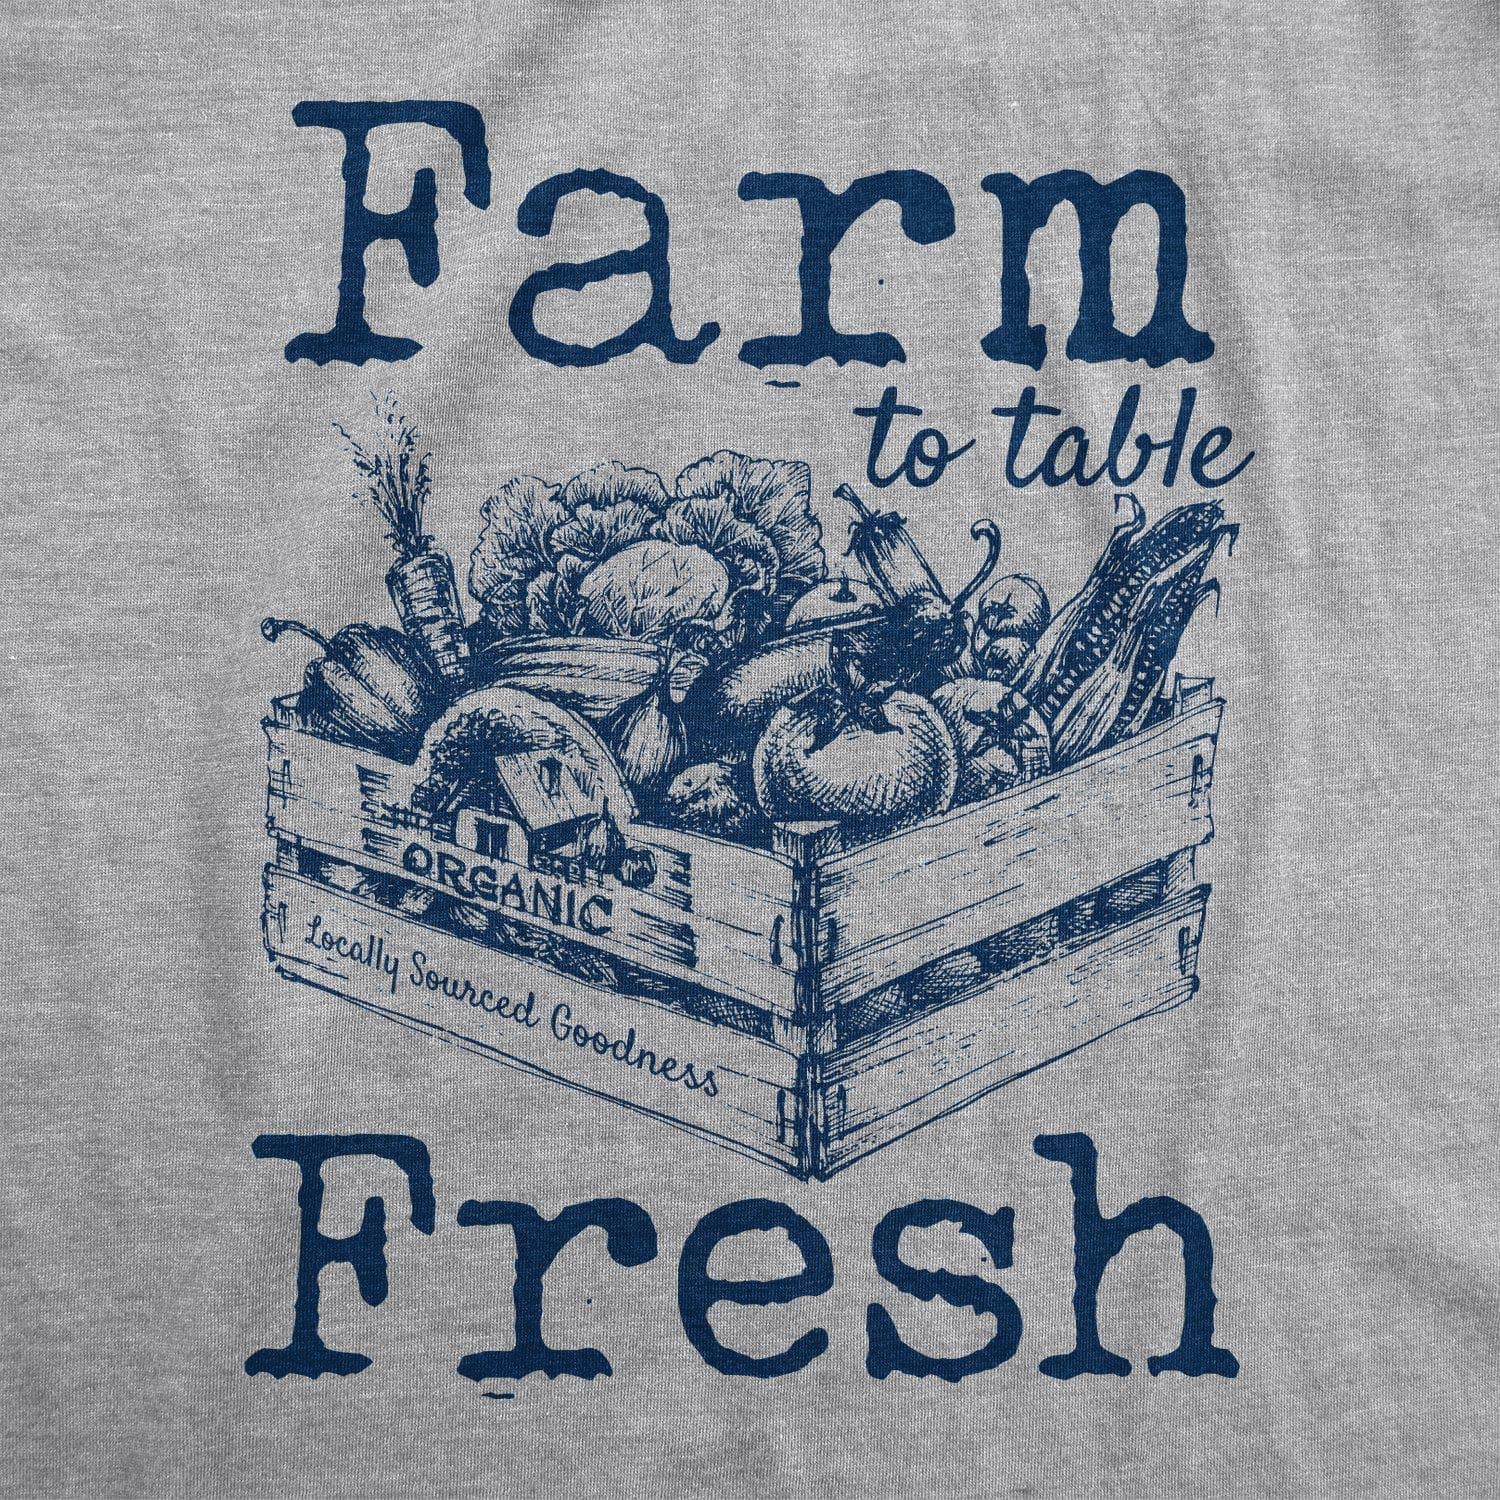 Farm To Table Fresh Men's Tshirt - Crazy Dog T-Shirts